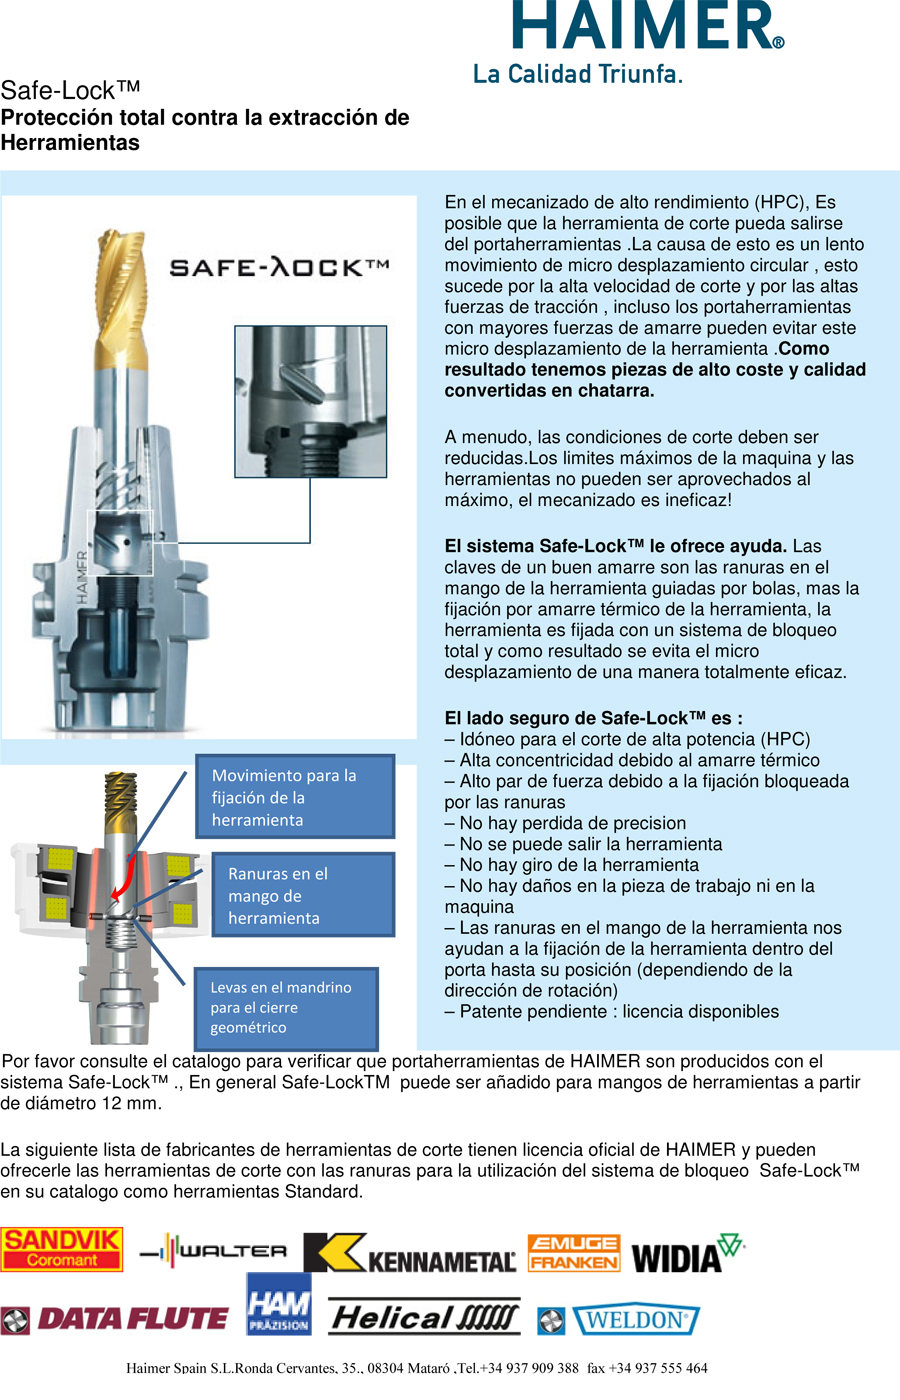 Safe-Lock™ Protección total contra la extracción de Herramientas